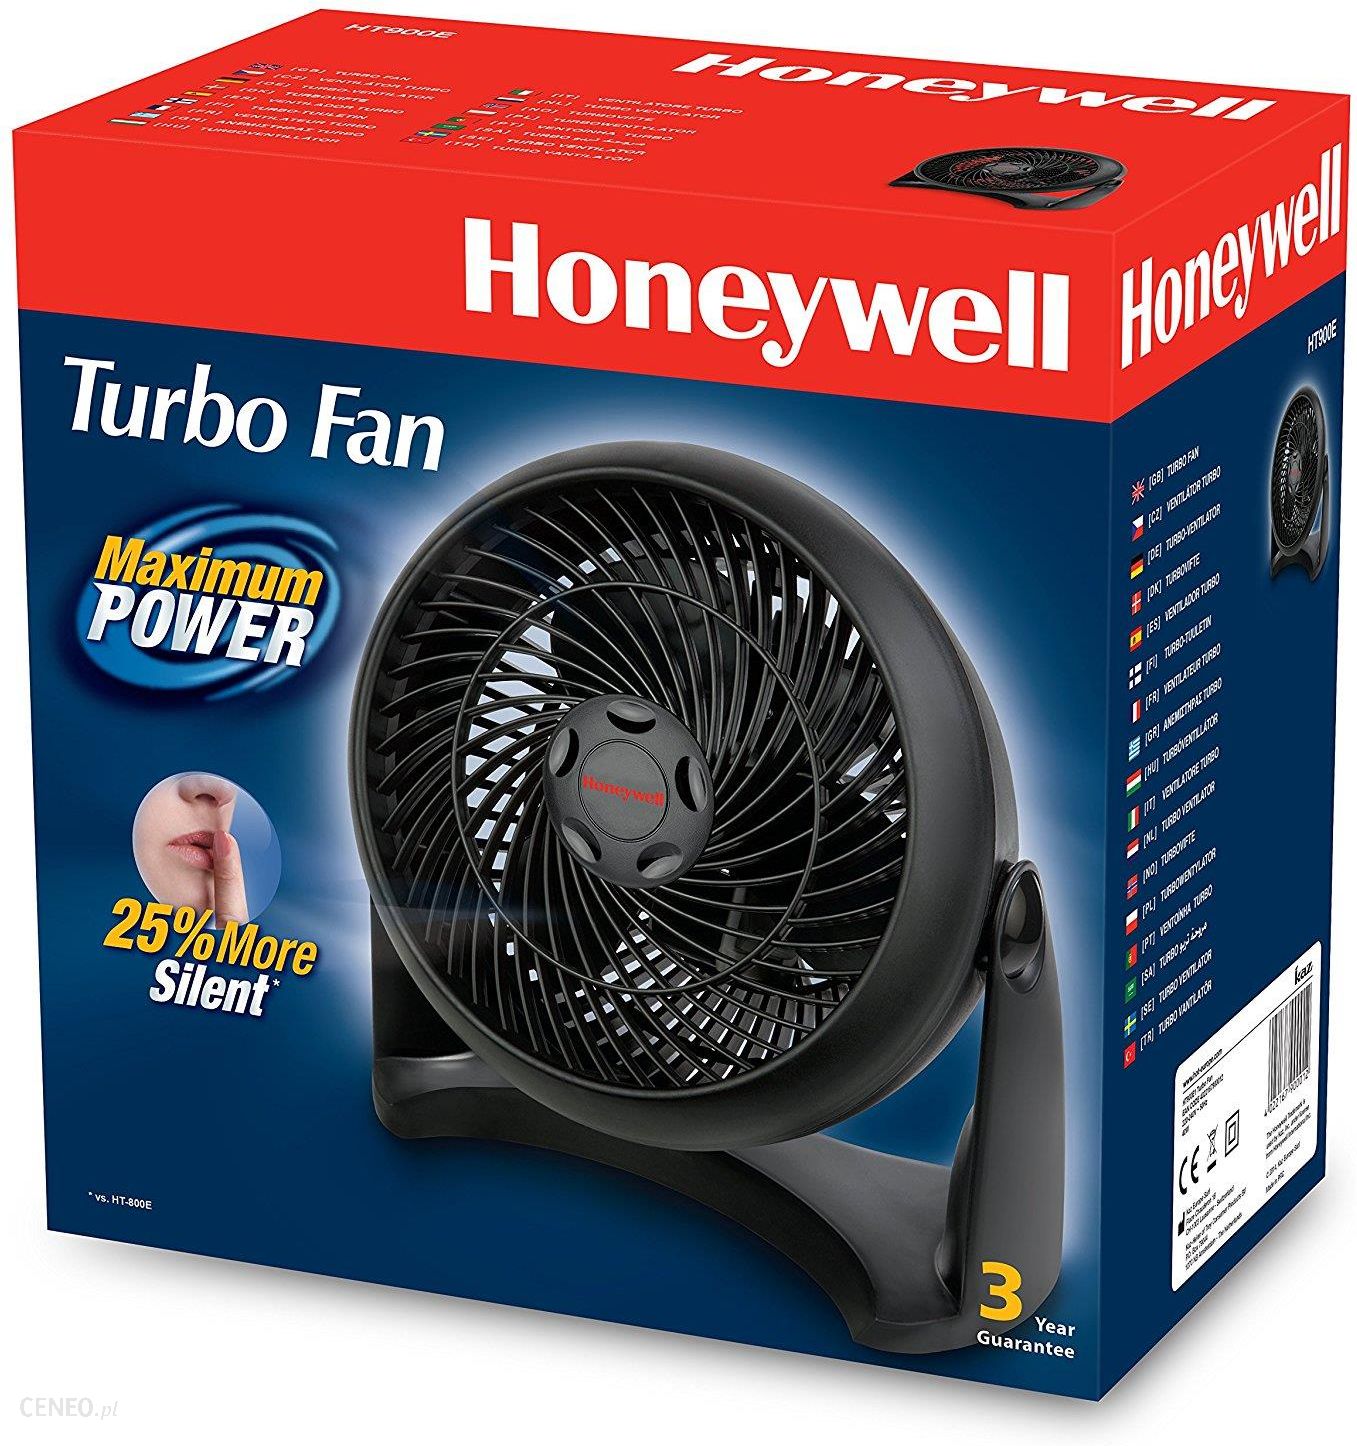 Honeywell HT900E TURBO FAN